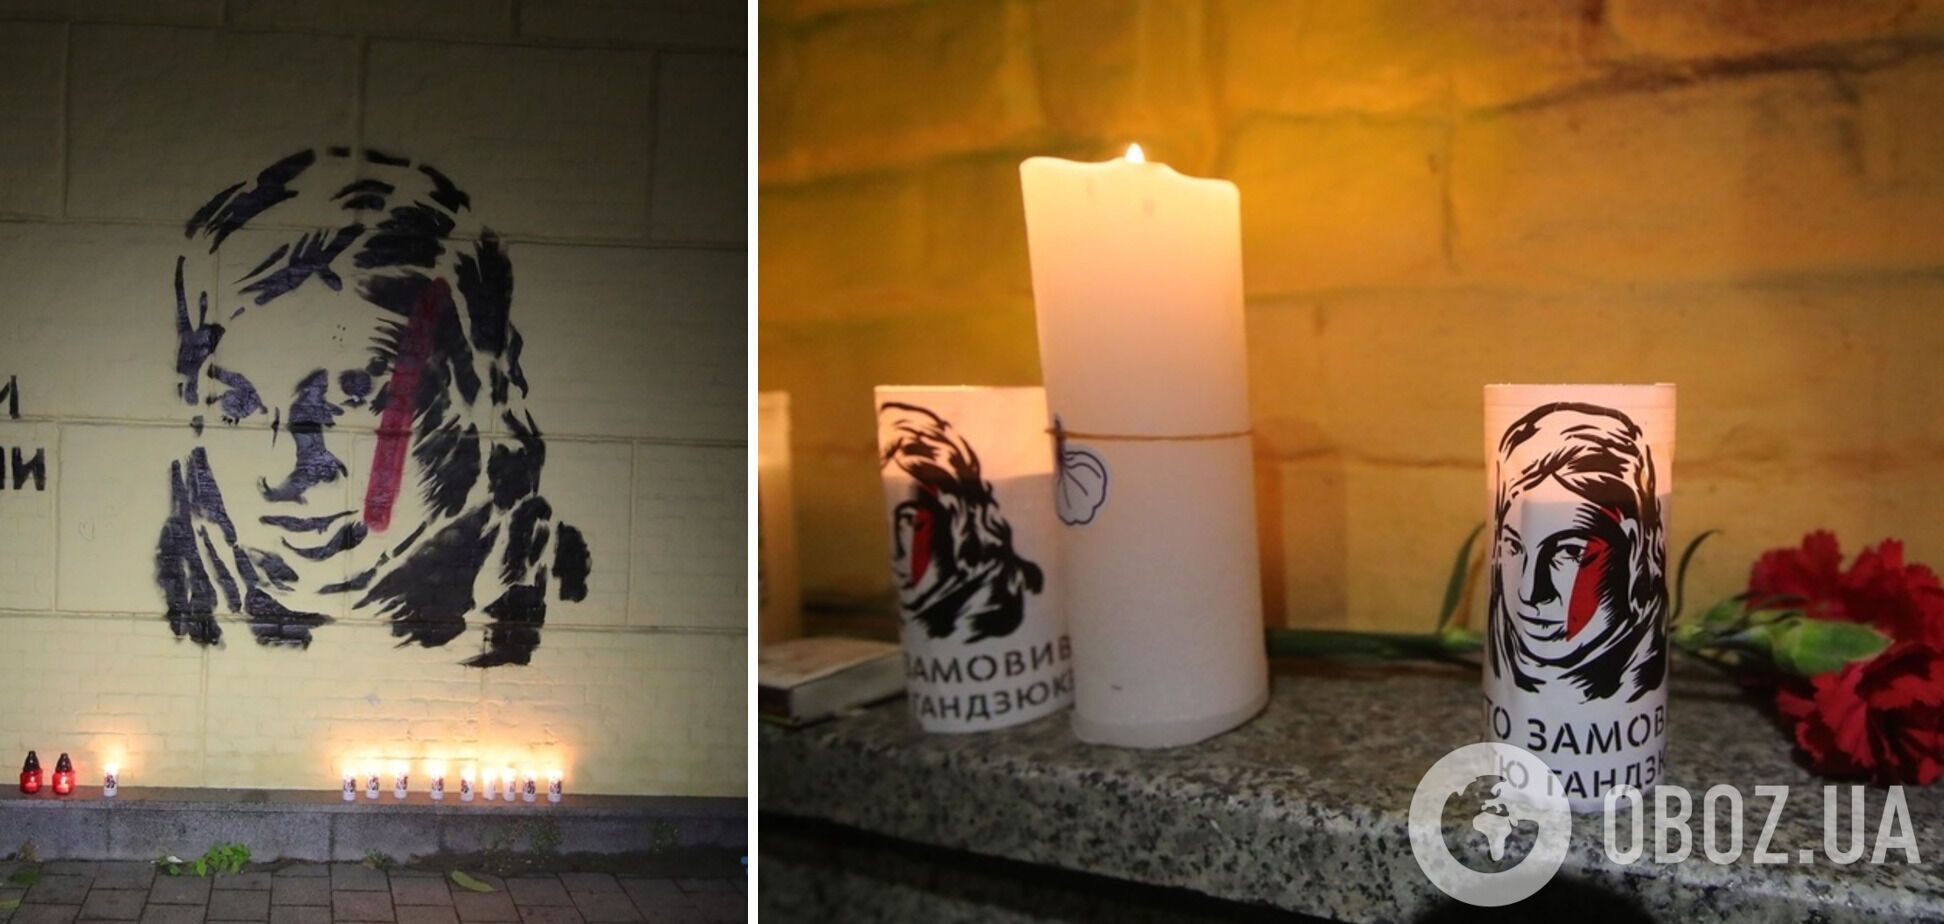 Активісти запалили лампадки під портретом Катерини